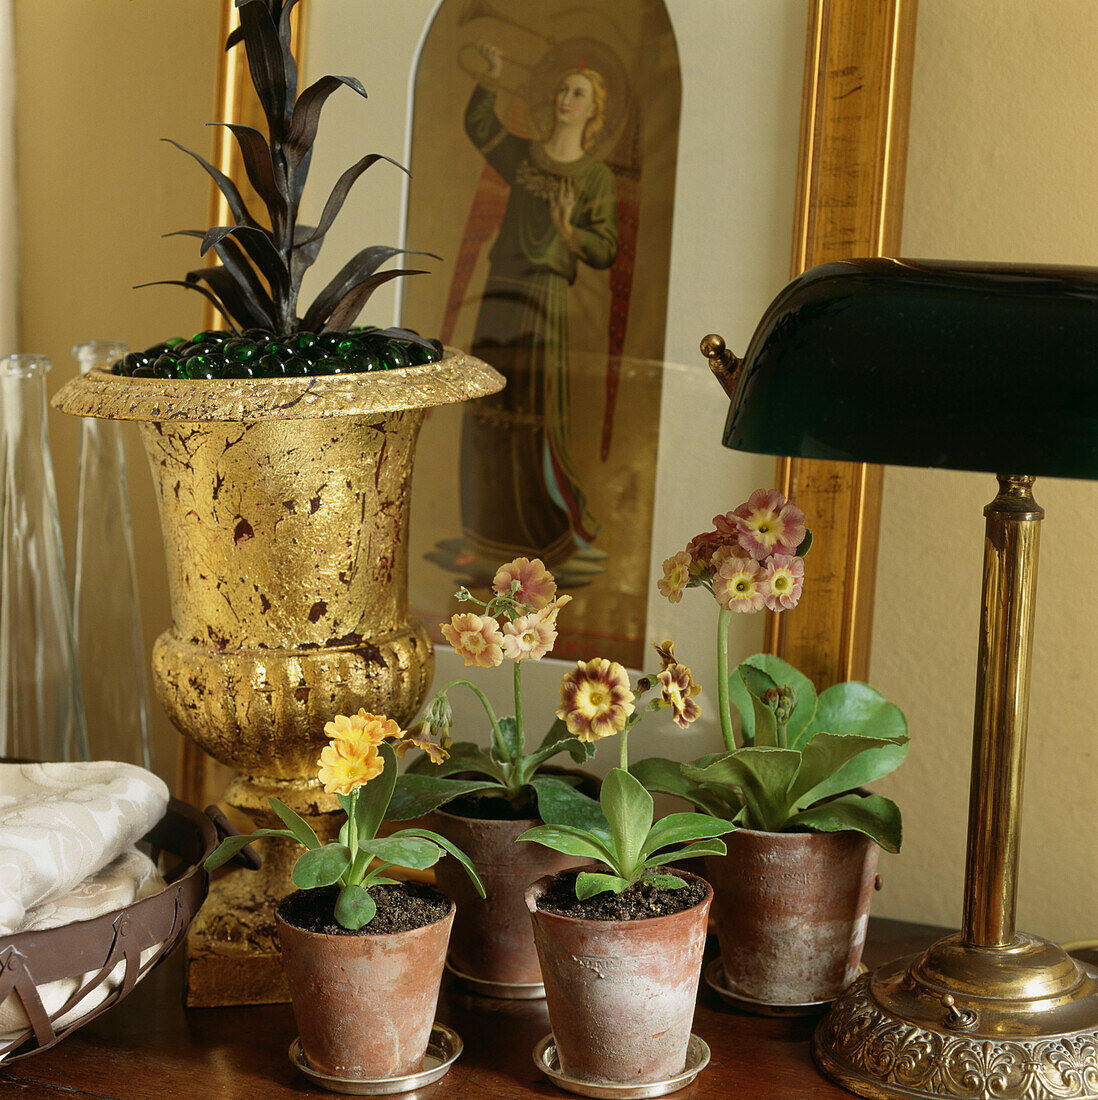 Auriculars gepflanzt in Terrakotta-Töpfen neben einer vergoldeten Vase, einer Tischlampe und einem Engelsbild